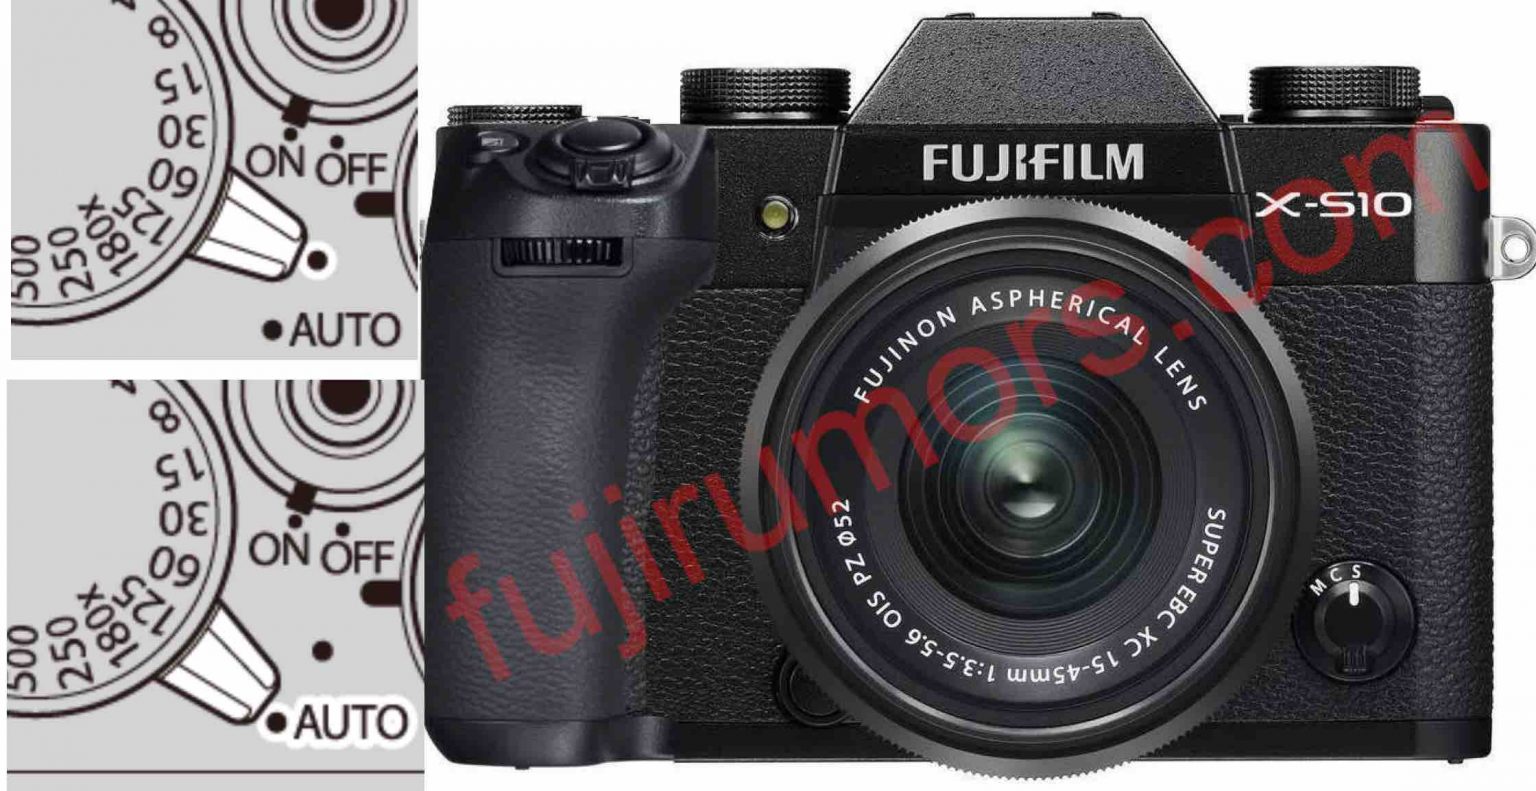 FINALLY!!! Fujifilm X-S10 Full AUTO Mode will Capture also RAW files